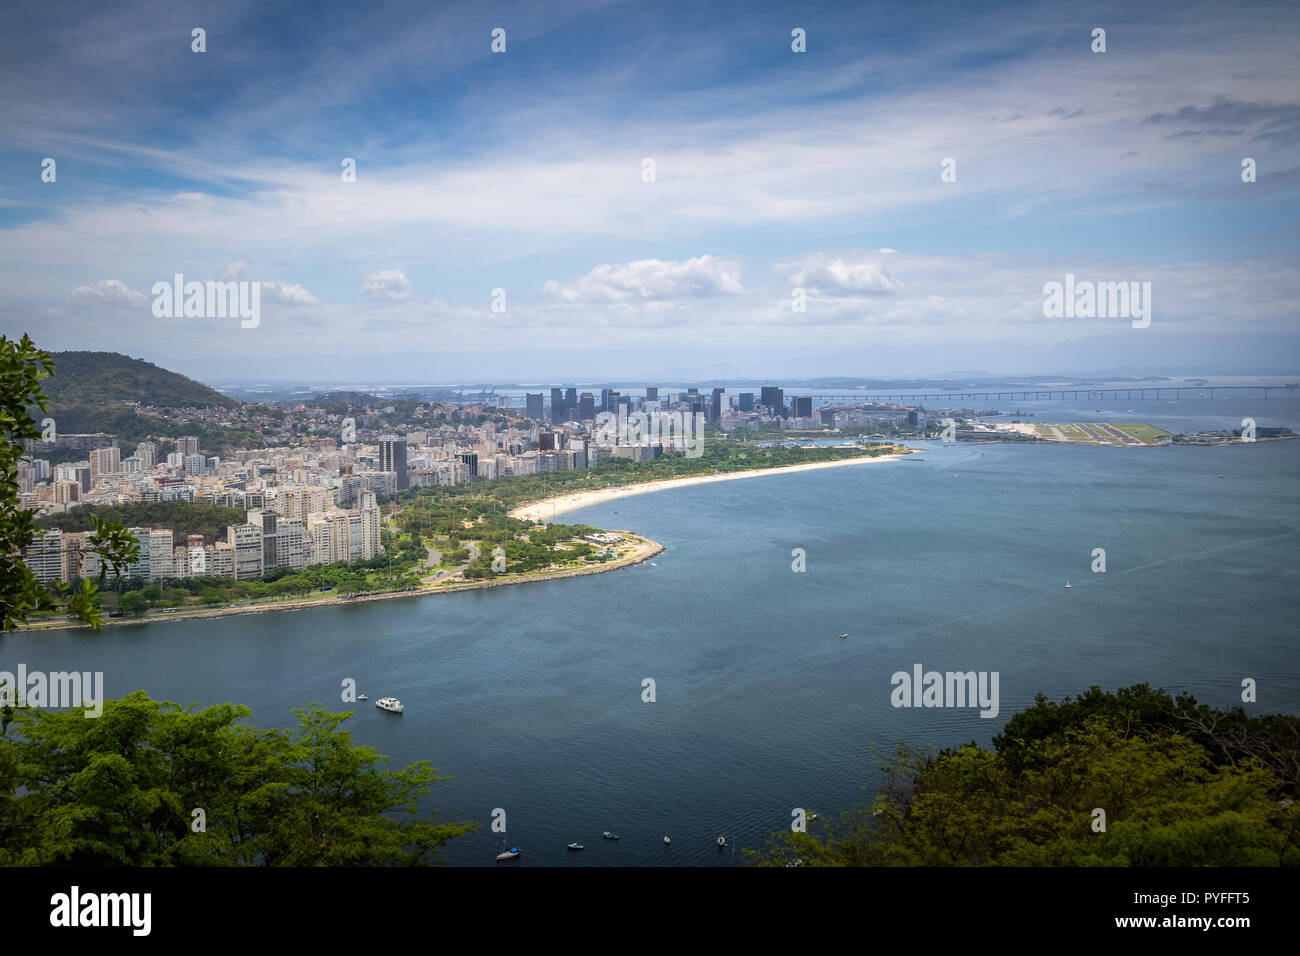 Panoramic aerial view of Rio de Janeiro, Guanabara Bay and Flamengo Park - Rio de Janeiro, Brazil Stock Photo